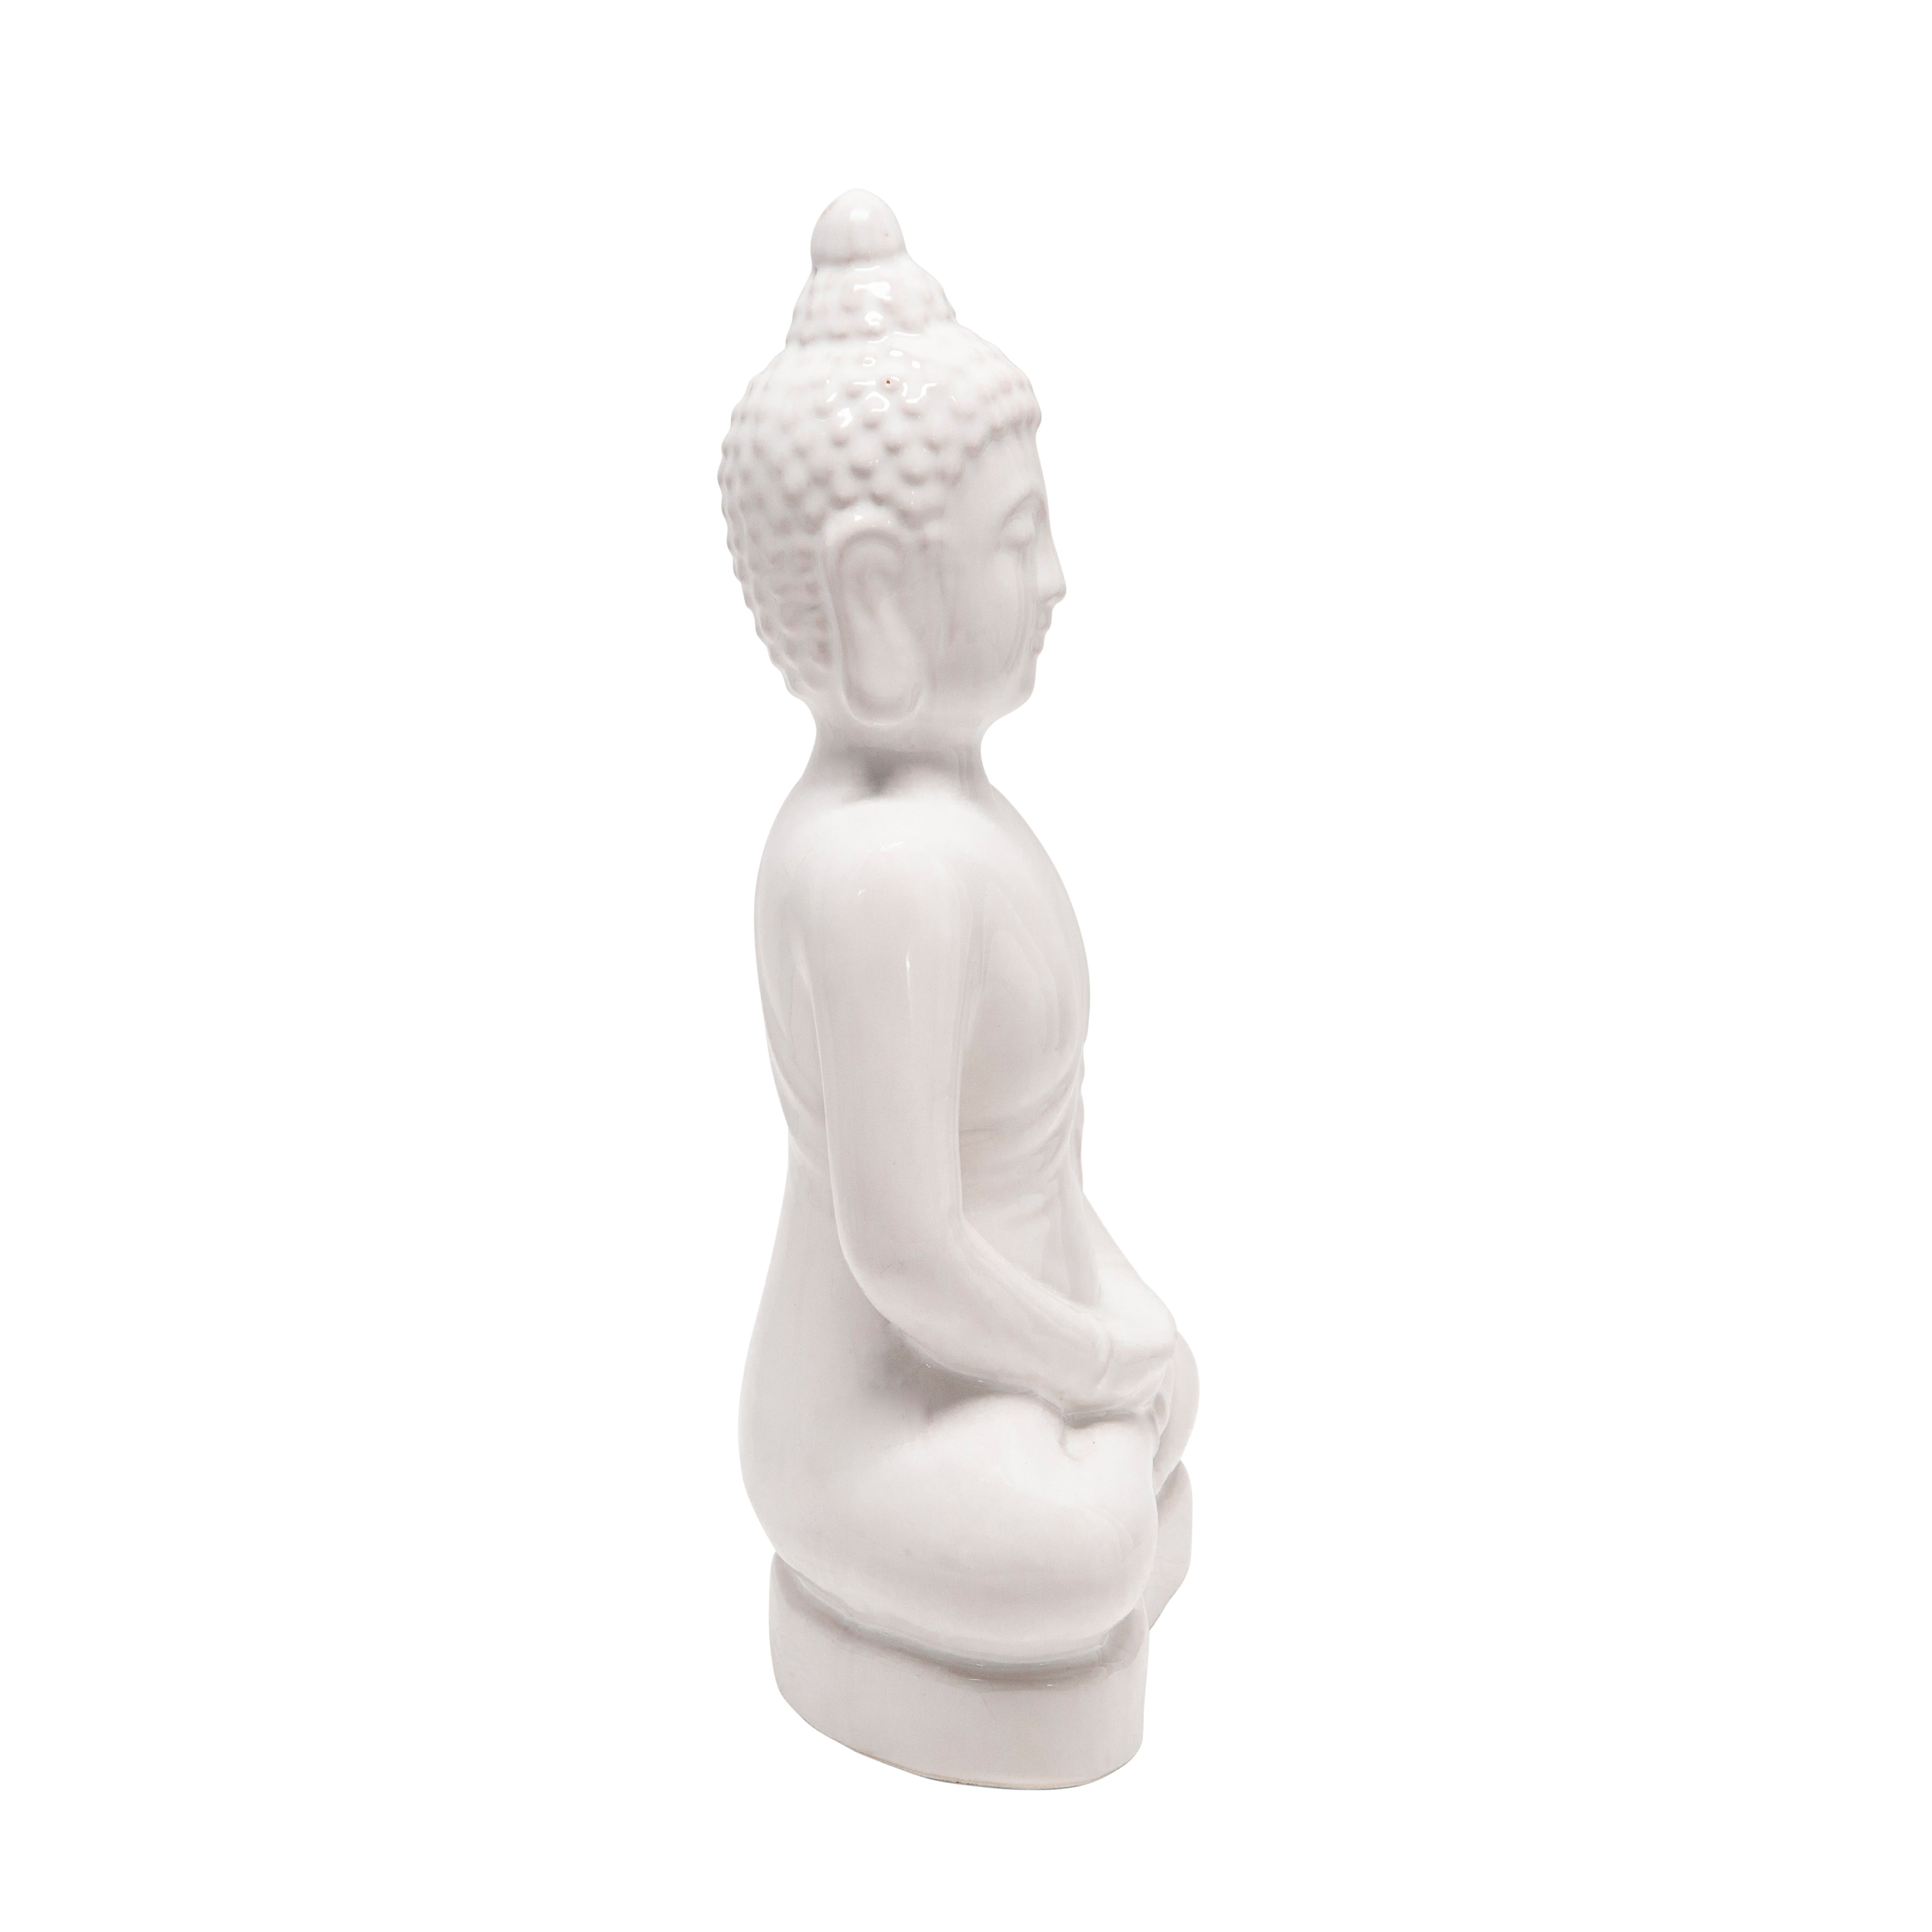 Ceramic 18" Buddha Figurine, White